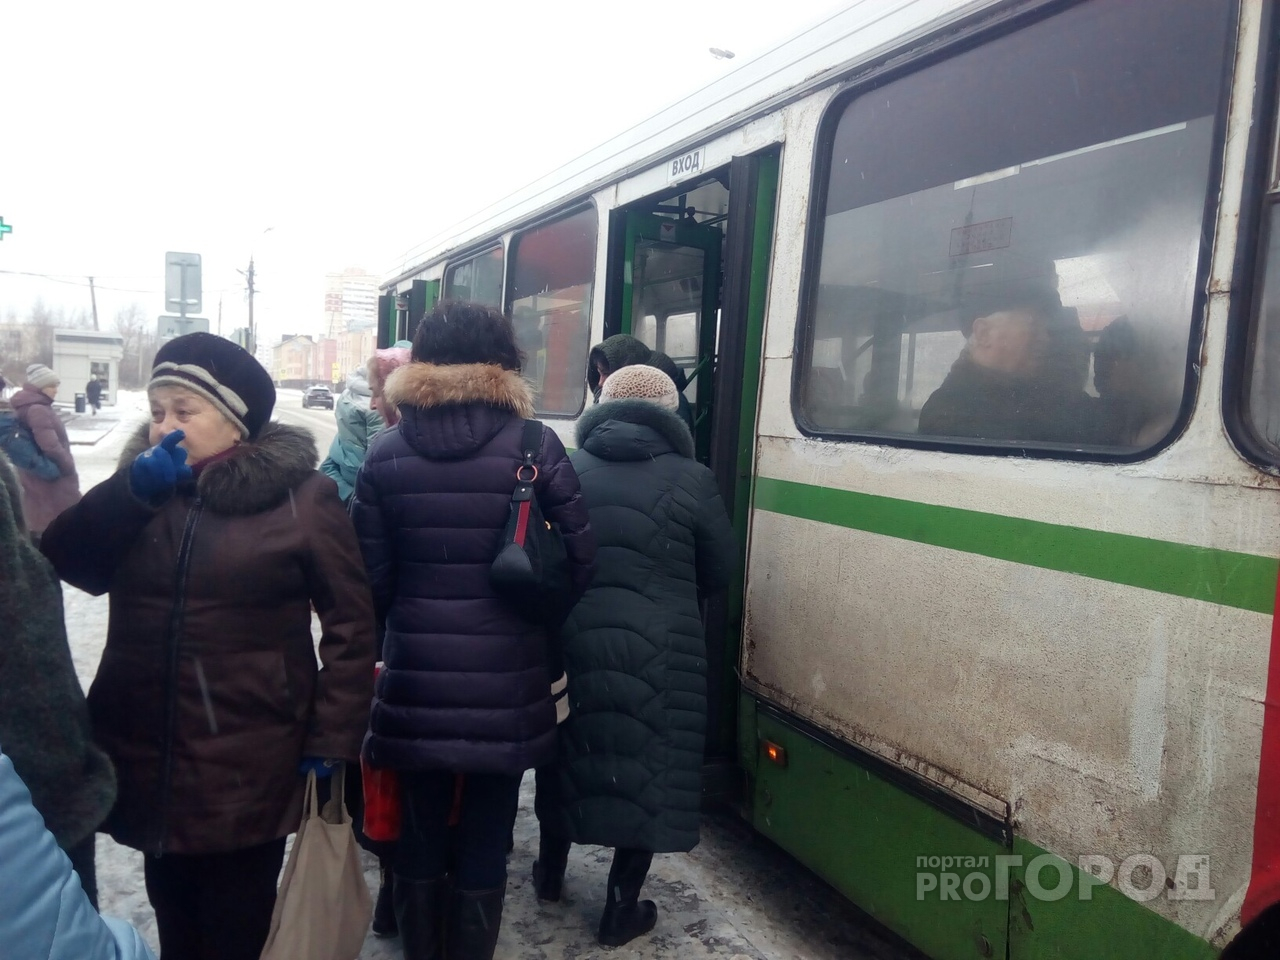 "Мне сказали-водитель невменяемый": женщину зажало в дверях троллейбуса в Ярославле